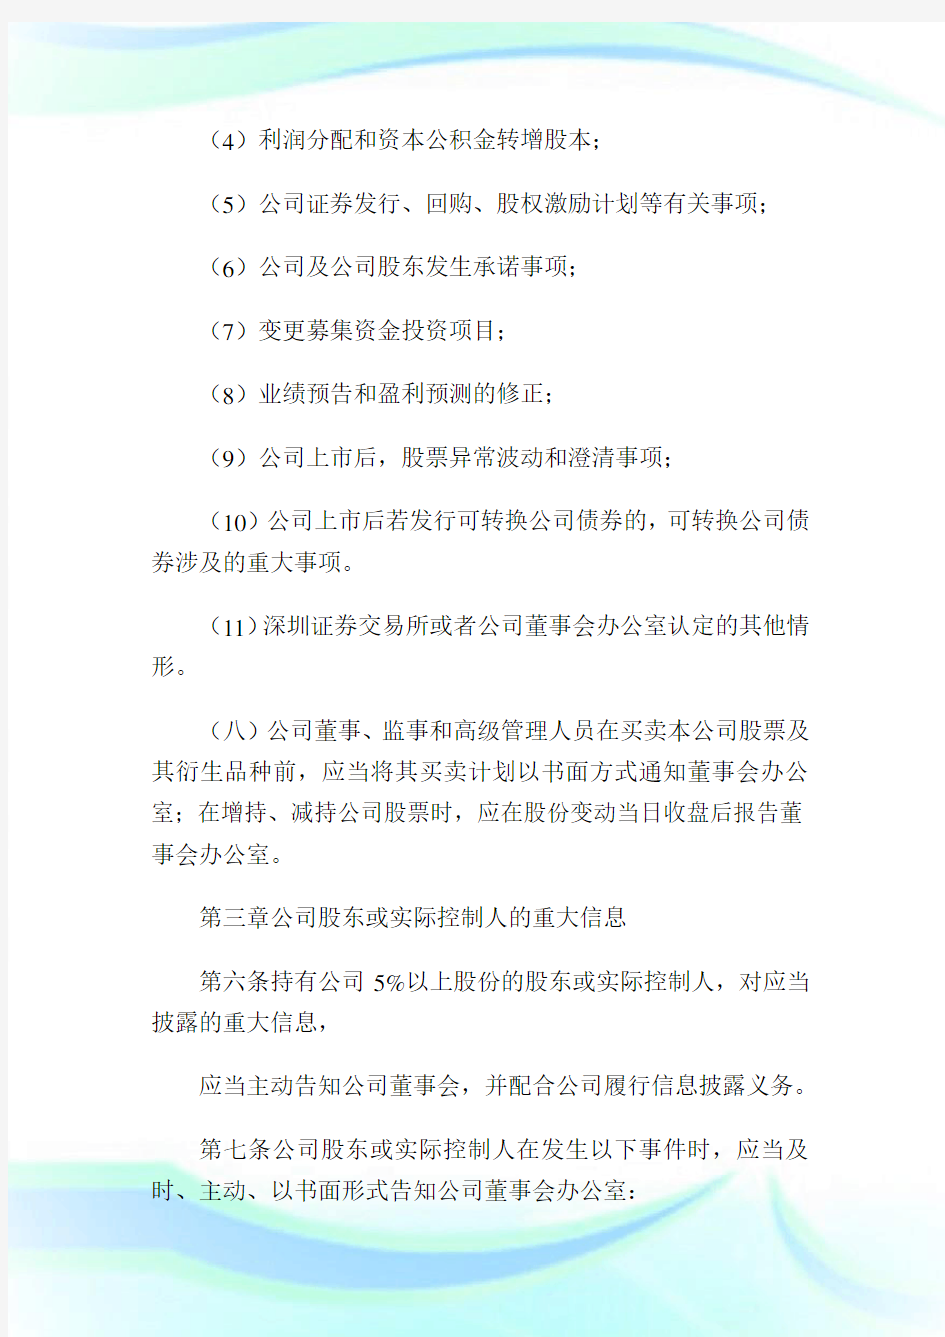 广东银禧科技股份有限公司重大信息内部报告与保密管理制度2完整篇.doc